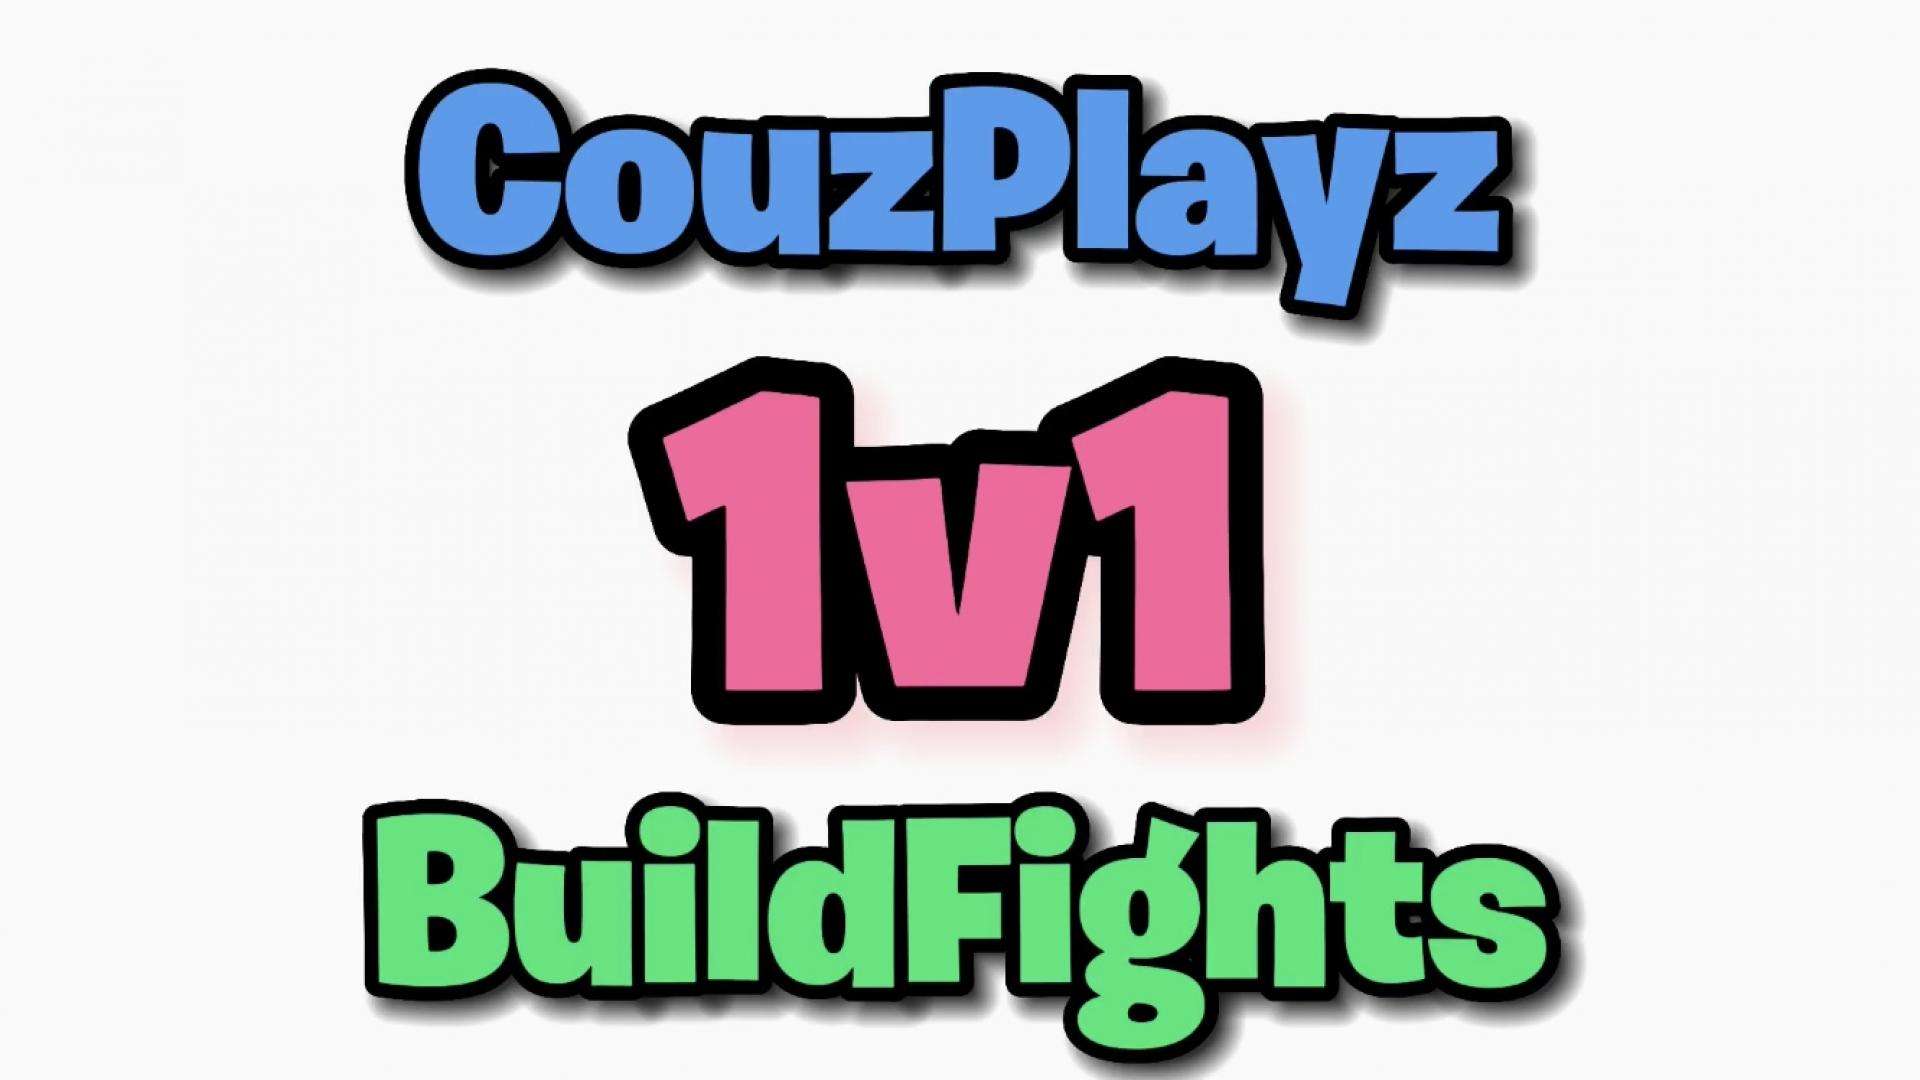 🔥COUZPLAYZ 1V1 BUILD FIGHTS (2 PLAYERS) image 2